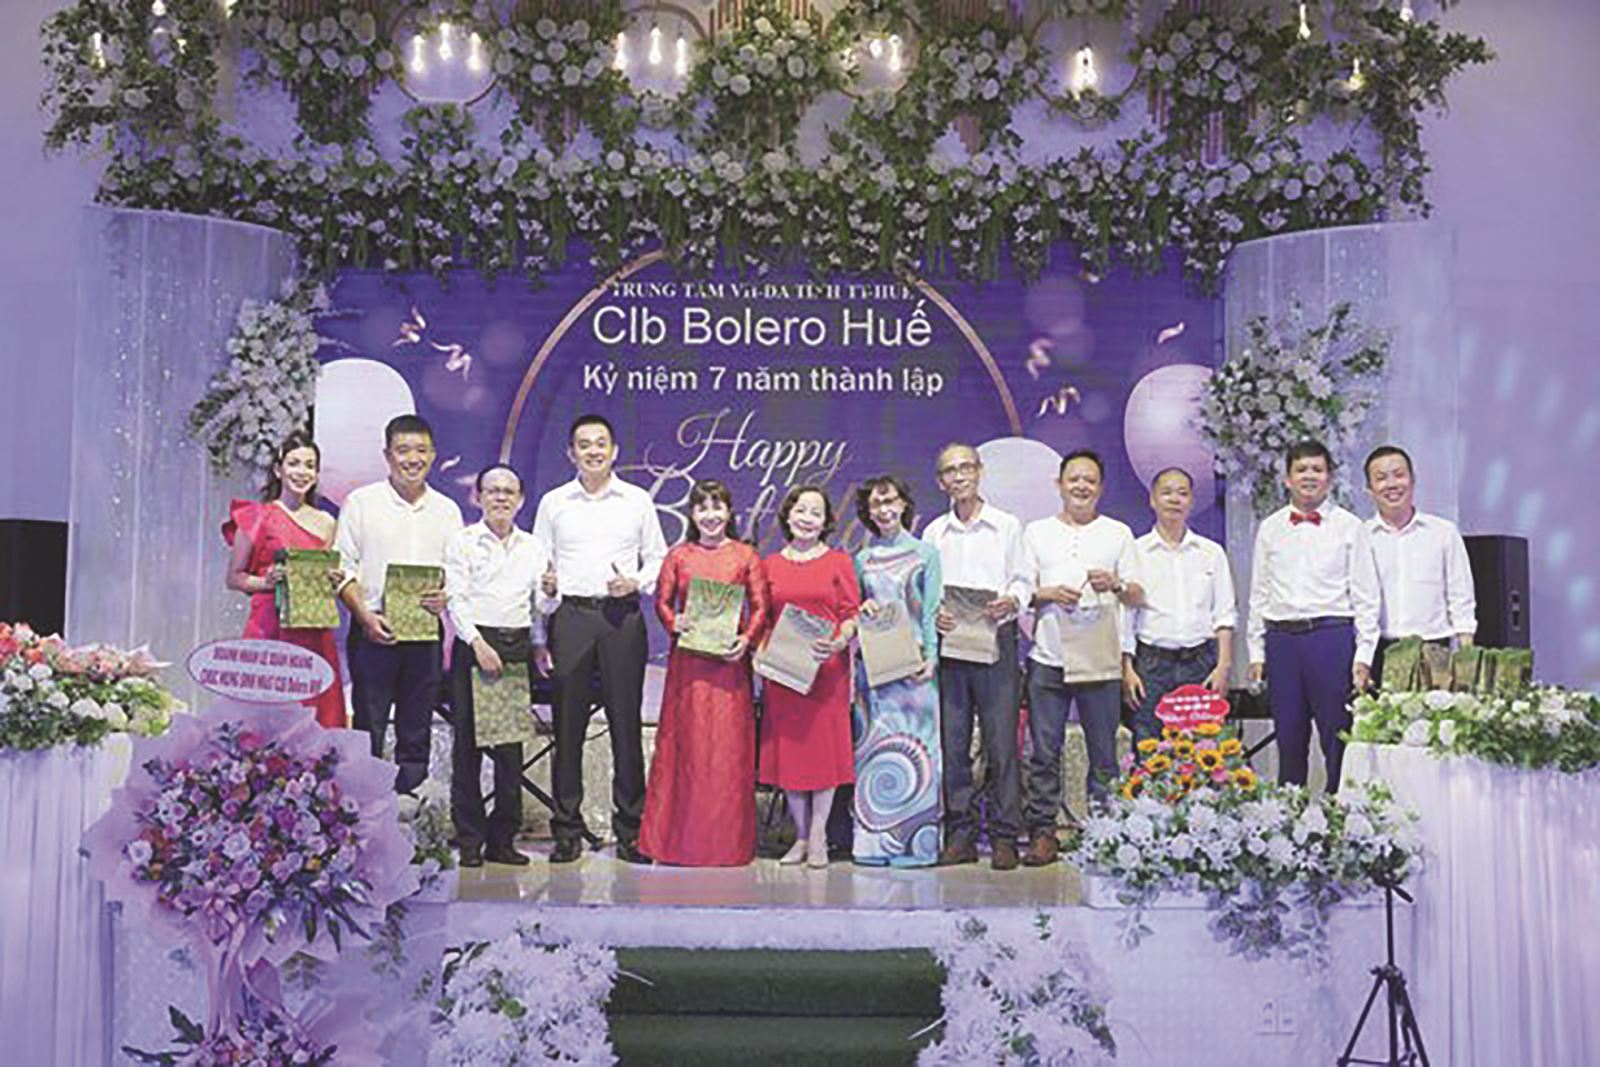 Được thành lập vào năm 2016, Câu lạc bộ Bolero Huế thuộc Trung tâm Văn hóa - Điện ảnh tỉnh Thừa Thiên Huế đã, đang ngày càng khẳng định được vị trí của mình trong lòng công chúng, đặc biệt là những người yêu dòng nhạc Bolero. Ngày 20/8/2023 vừa qua, Câu lạc bộ đã tiến hành tổ chức kỷ niệm 7 năm thành lập với sự tham gia của gần 100 hội viên và khách mời.
